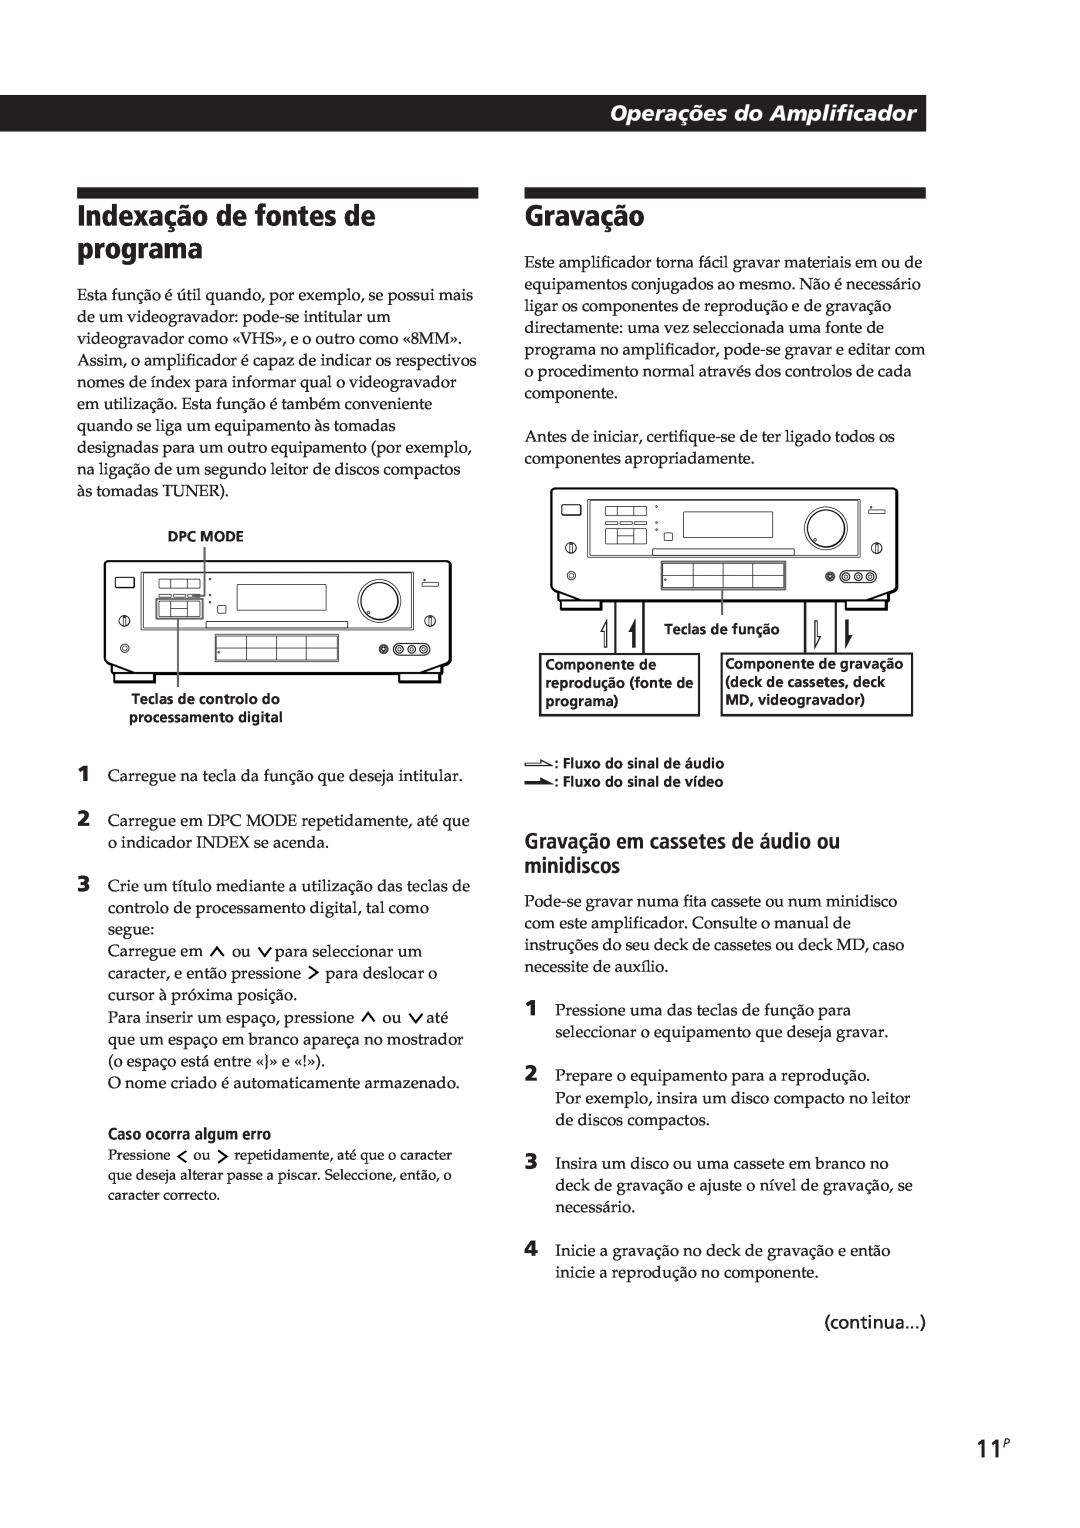 Sony TA-VE700 manual Indexação de fontes de programa, Gravação, Operações do Amplificador, continua, Caso ocorra algum erro 